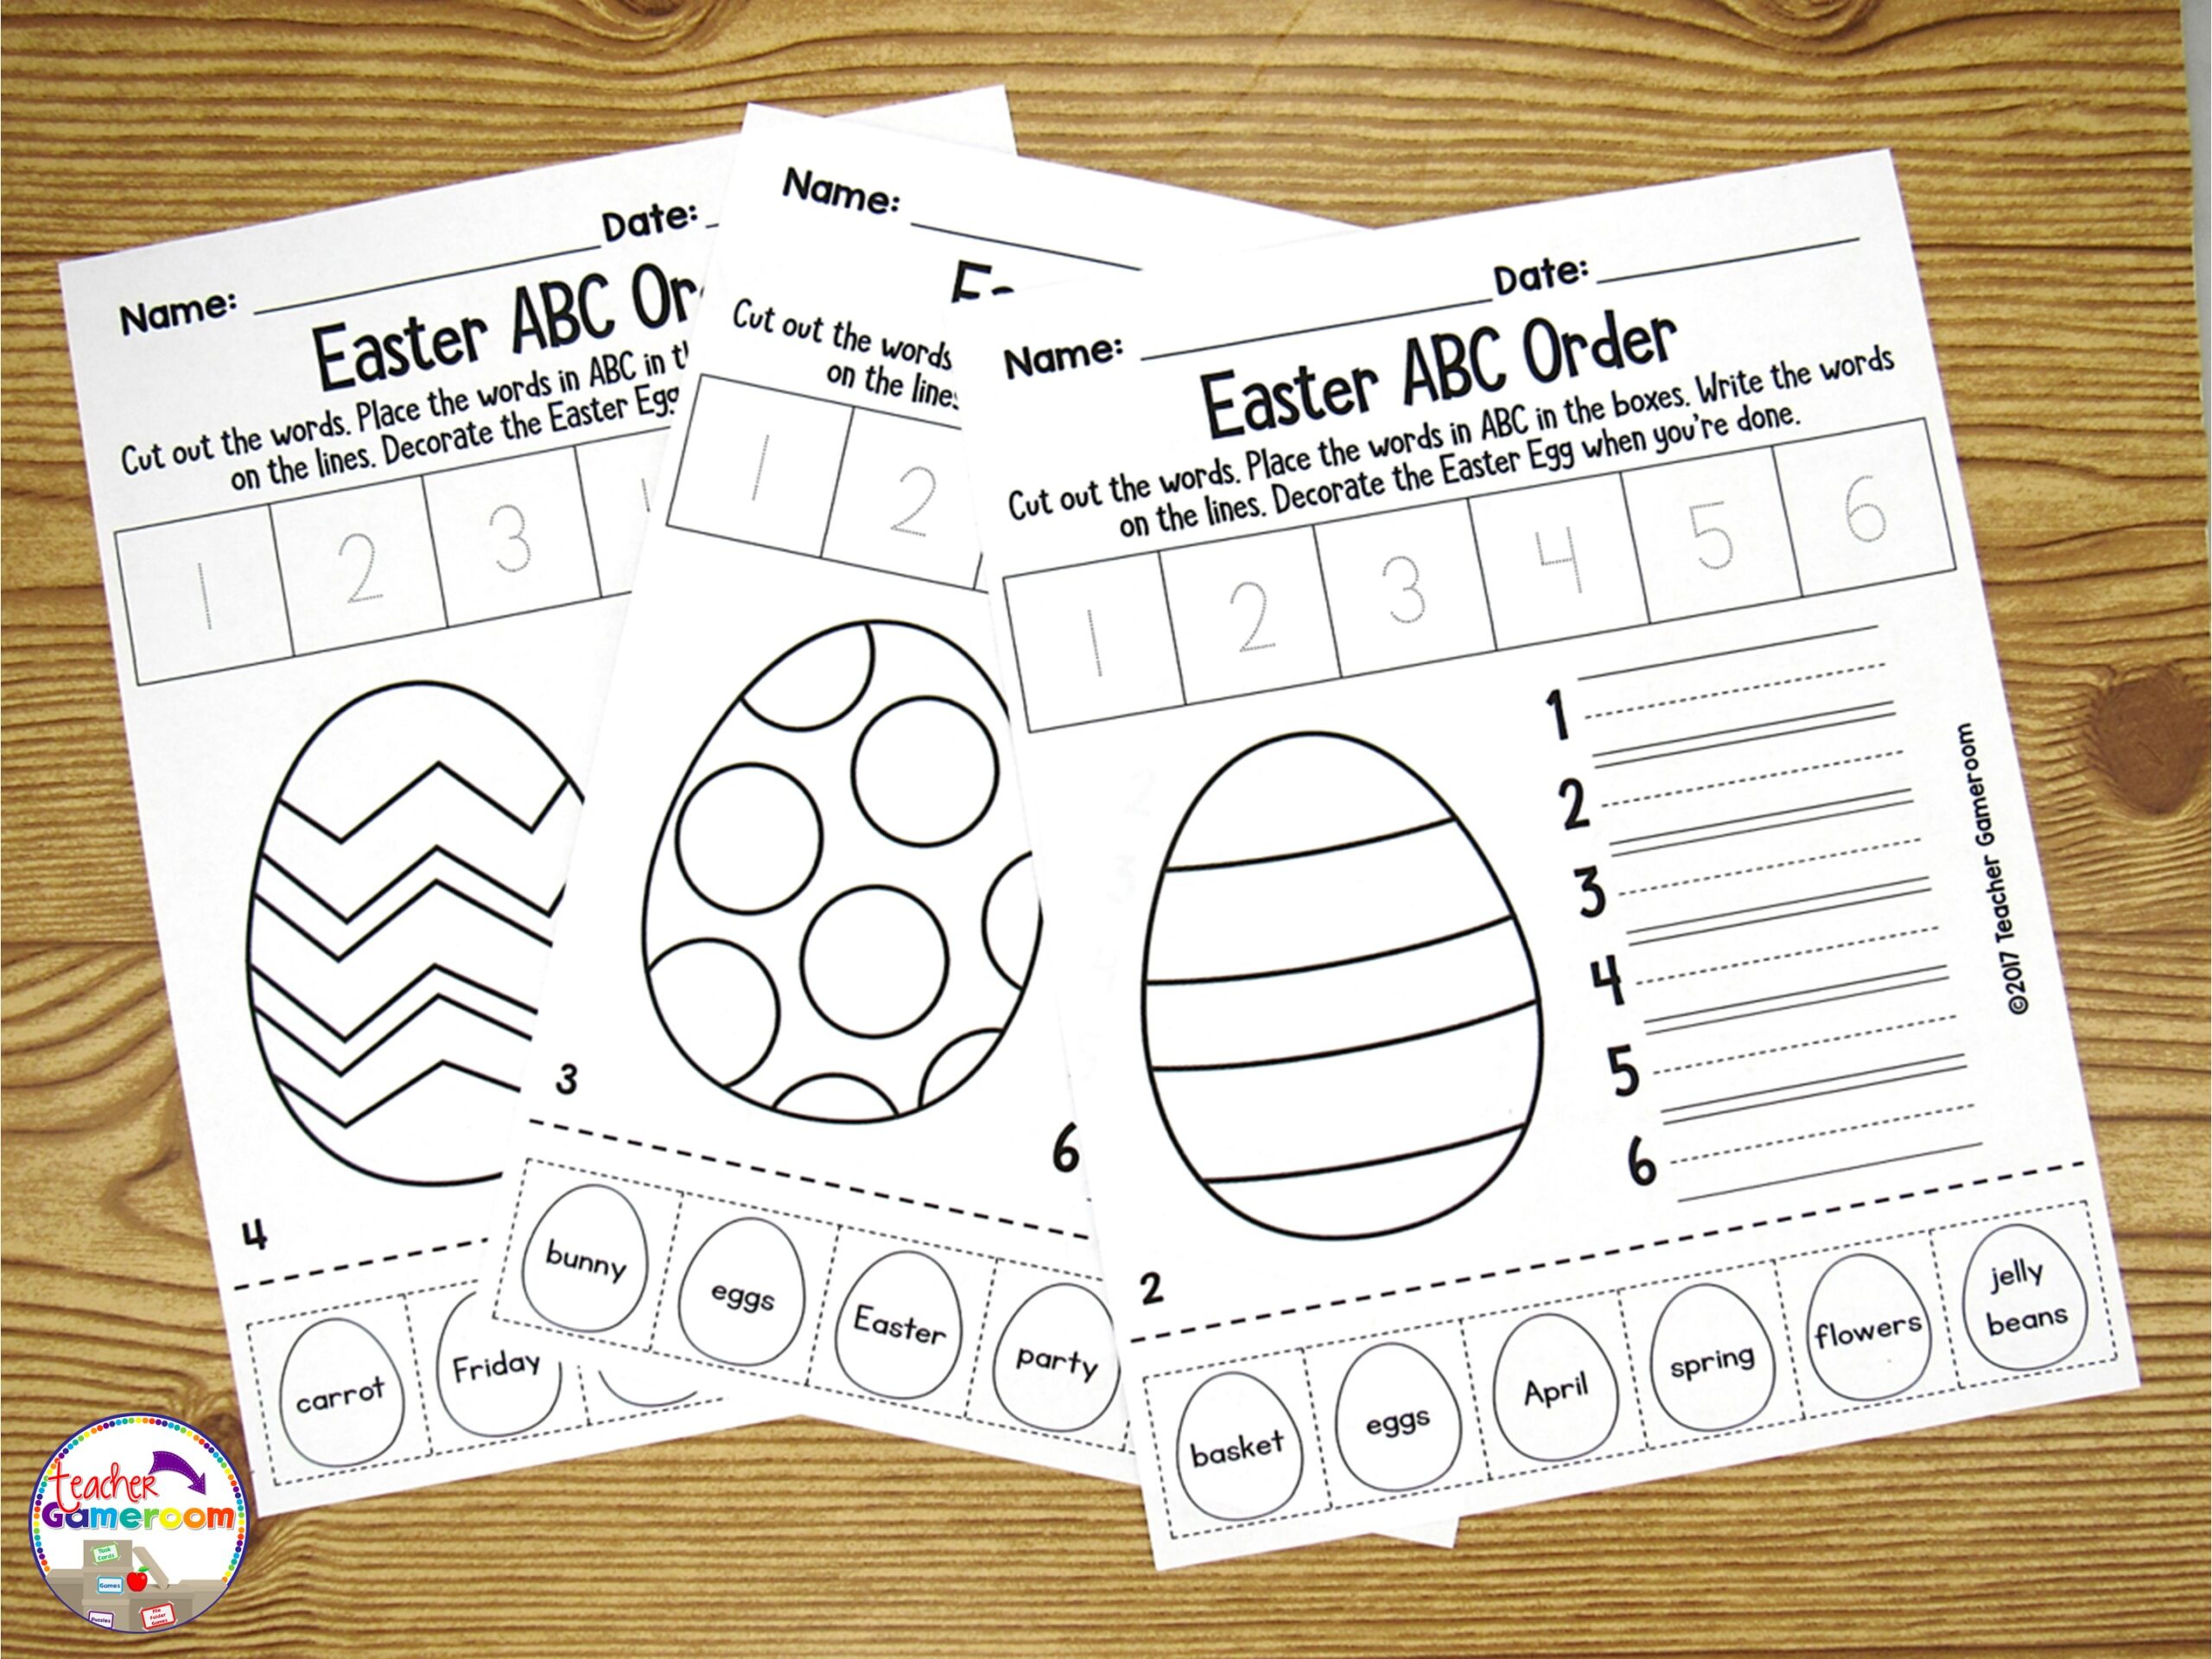 3 Easter ABC Order Worksheets on a desk